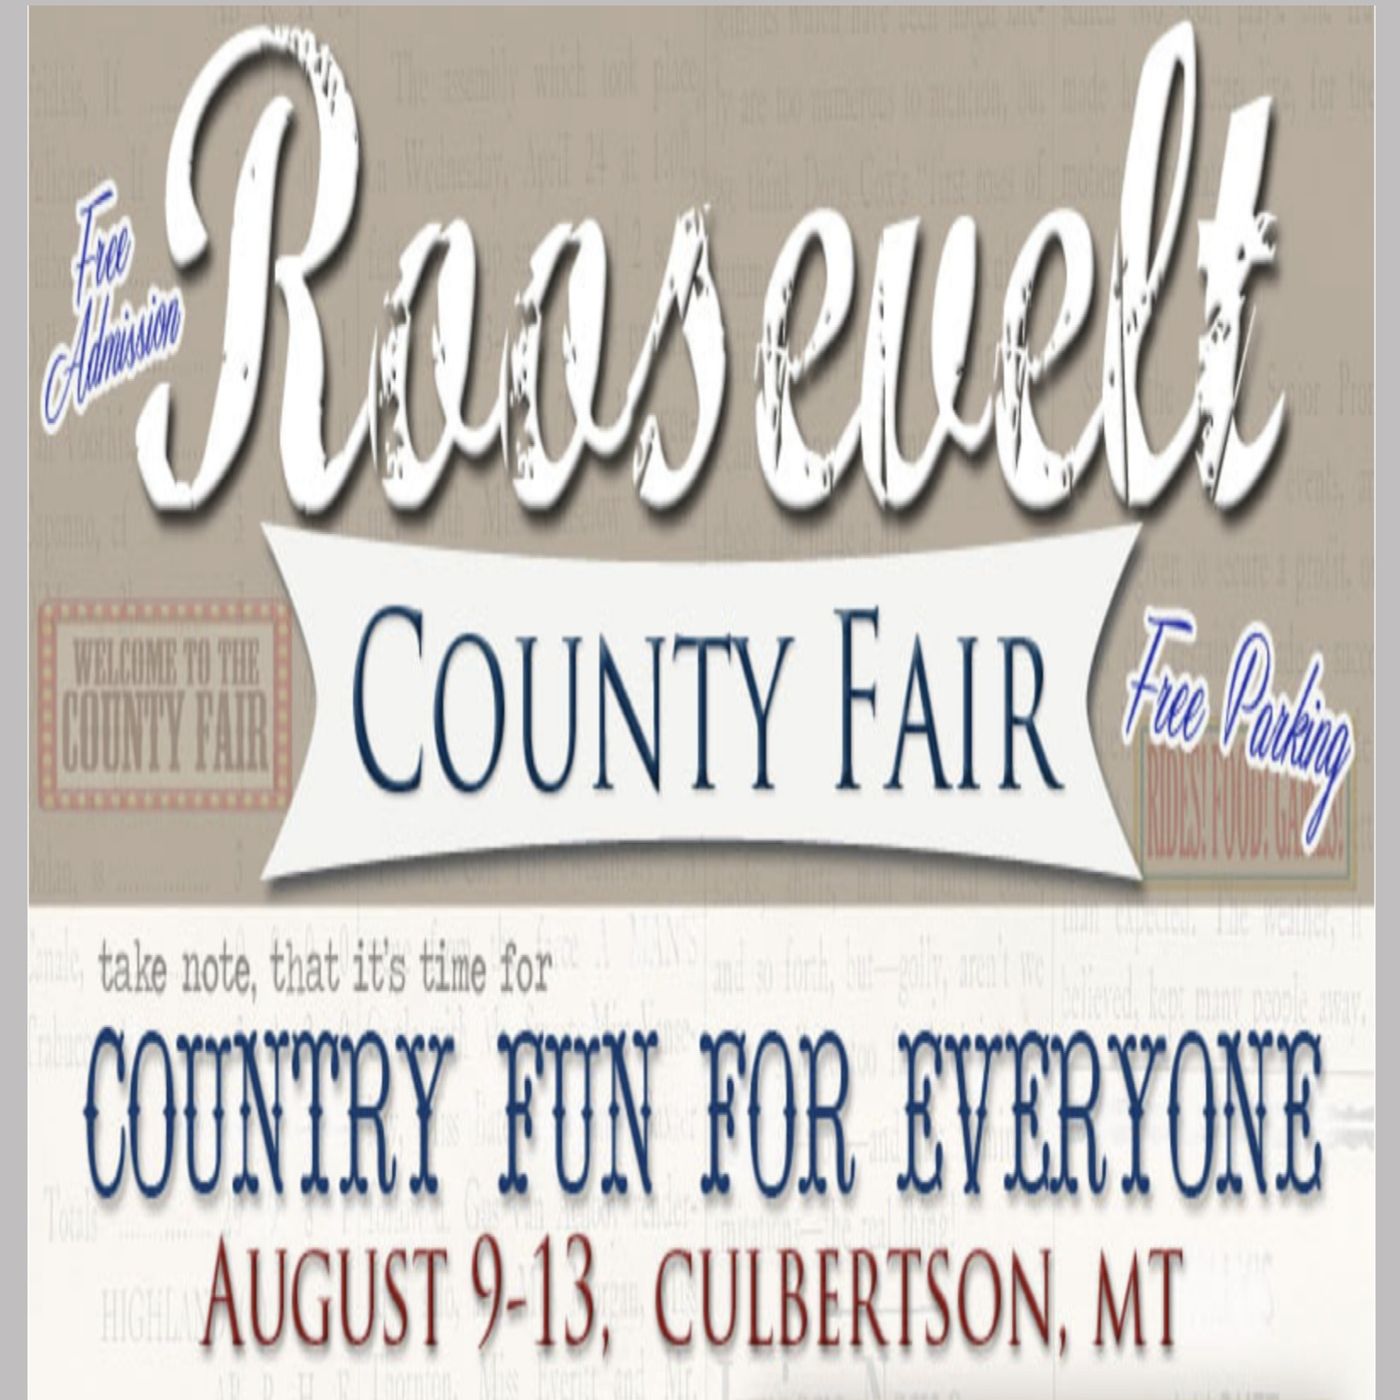 Countyfairgrounds interviews Roosevelt Co Fair Montana